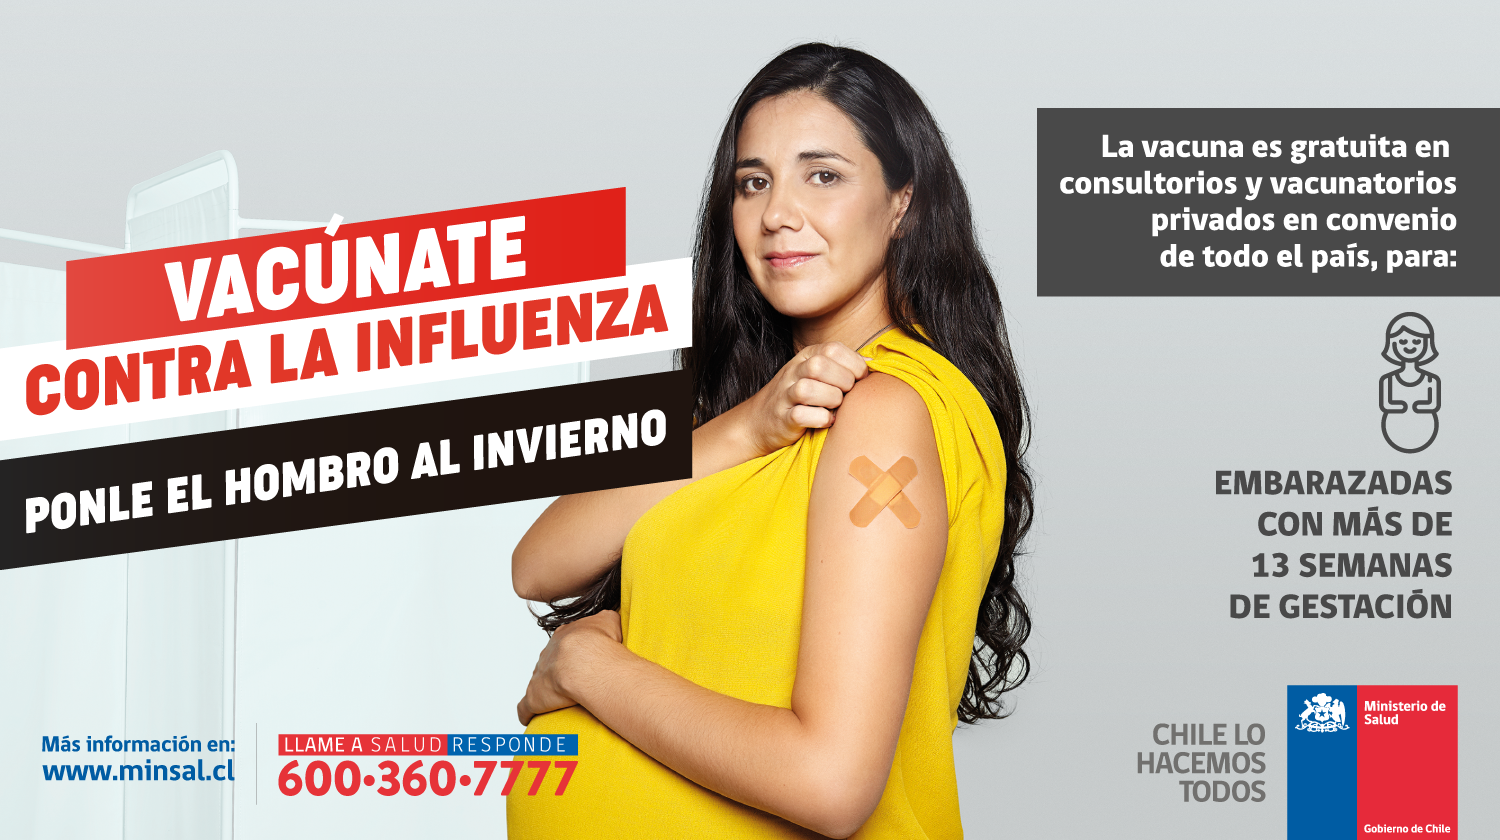 Campaña de vacunación contra la influenza Ponle el hombro al invierno